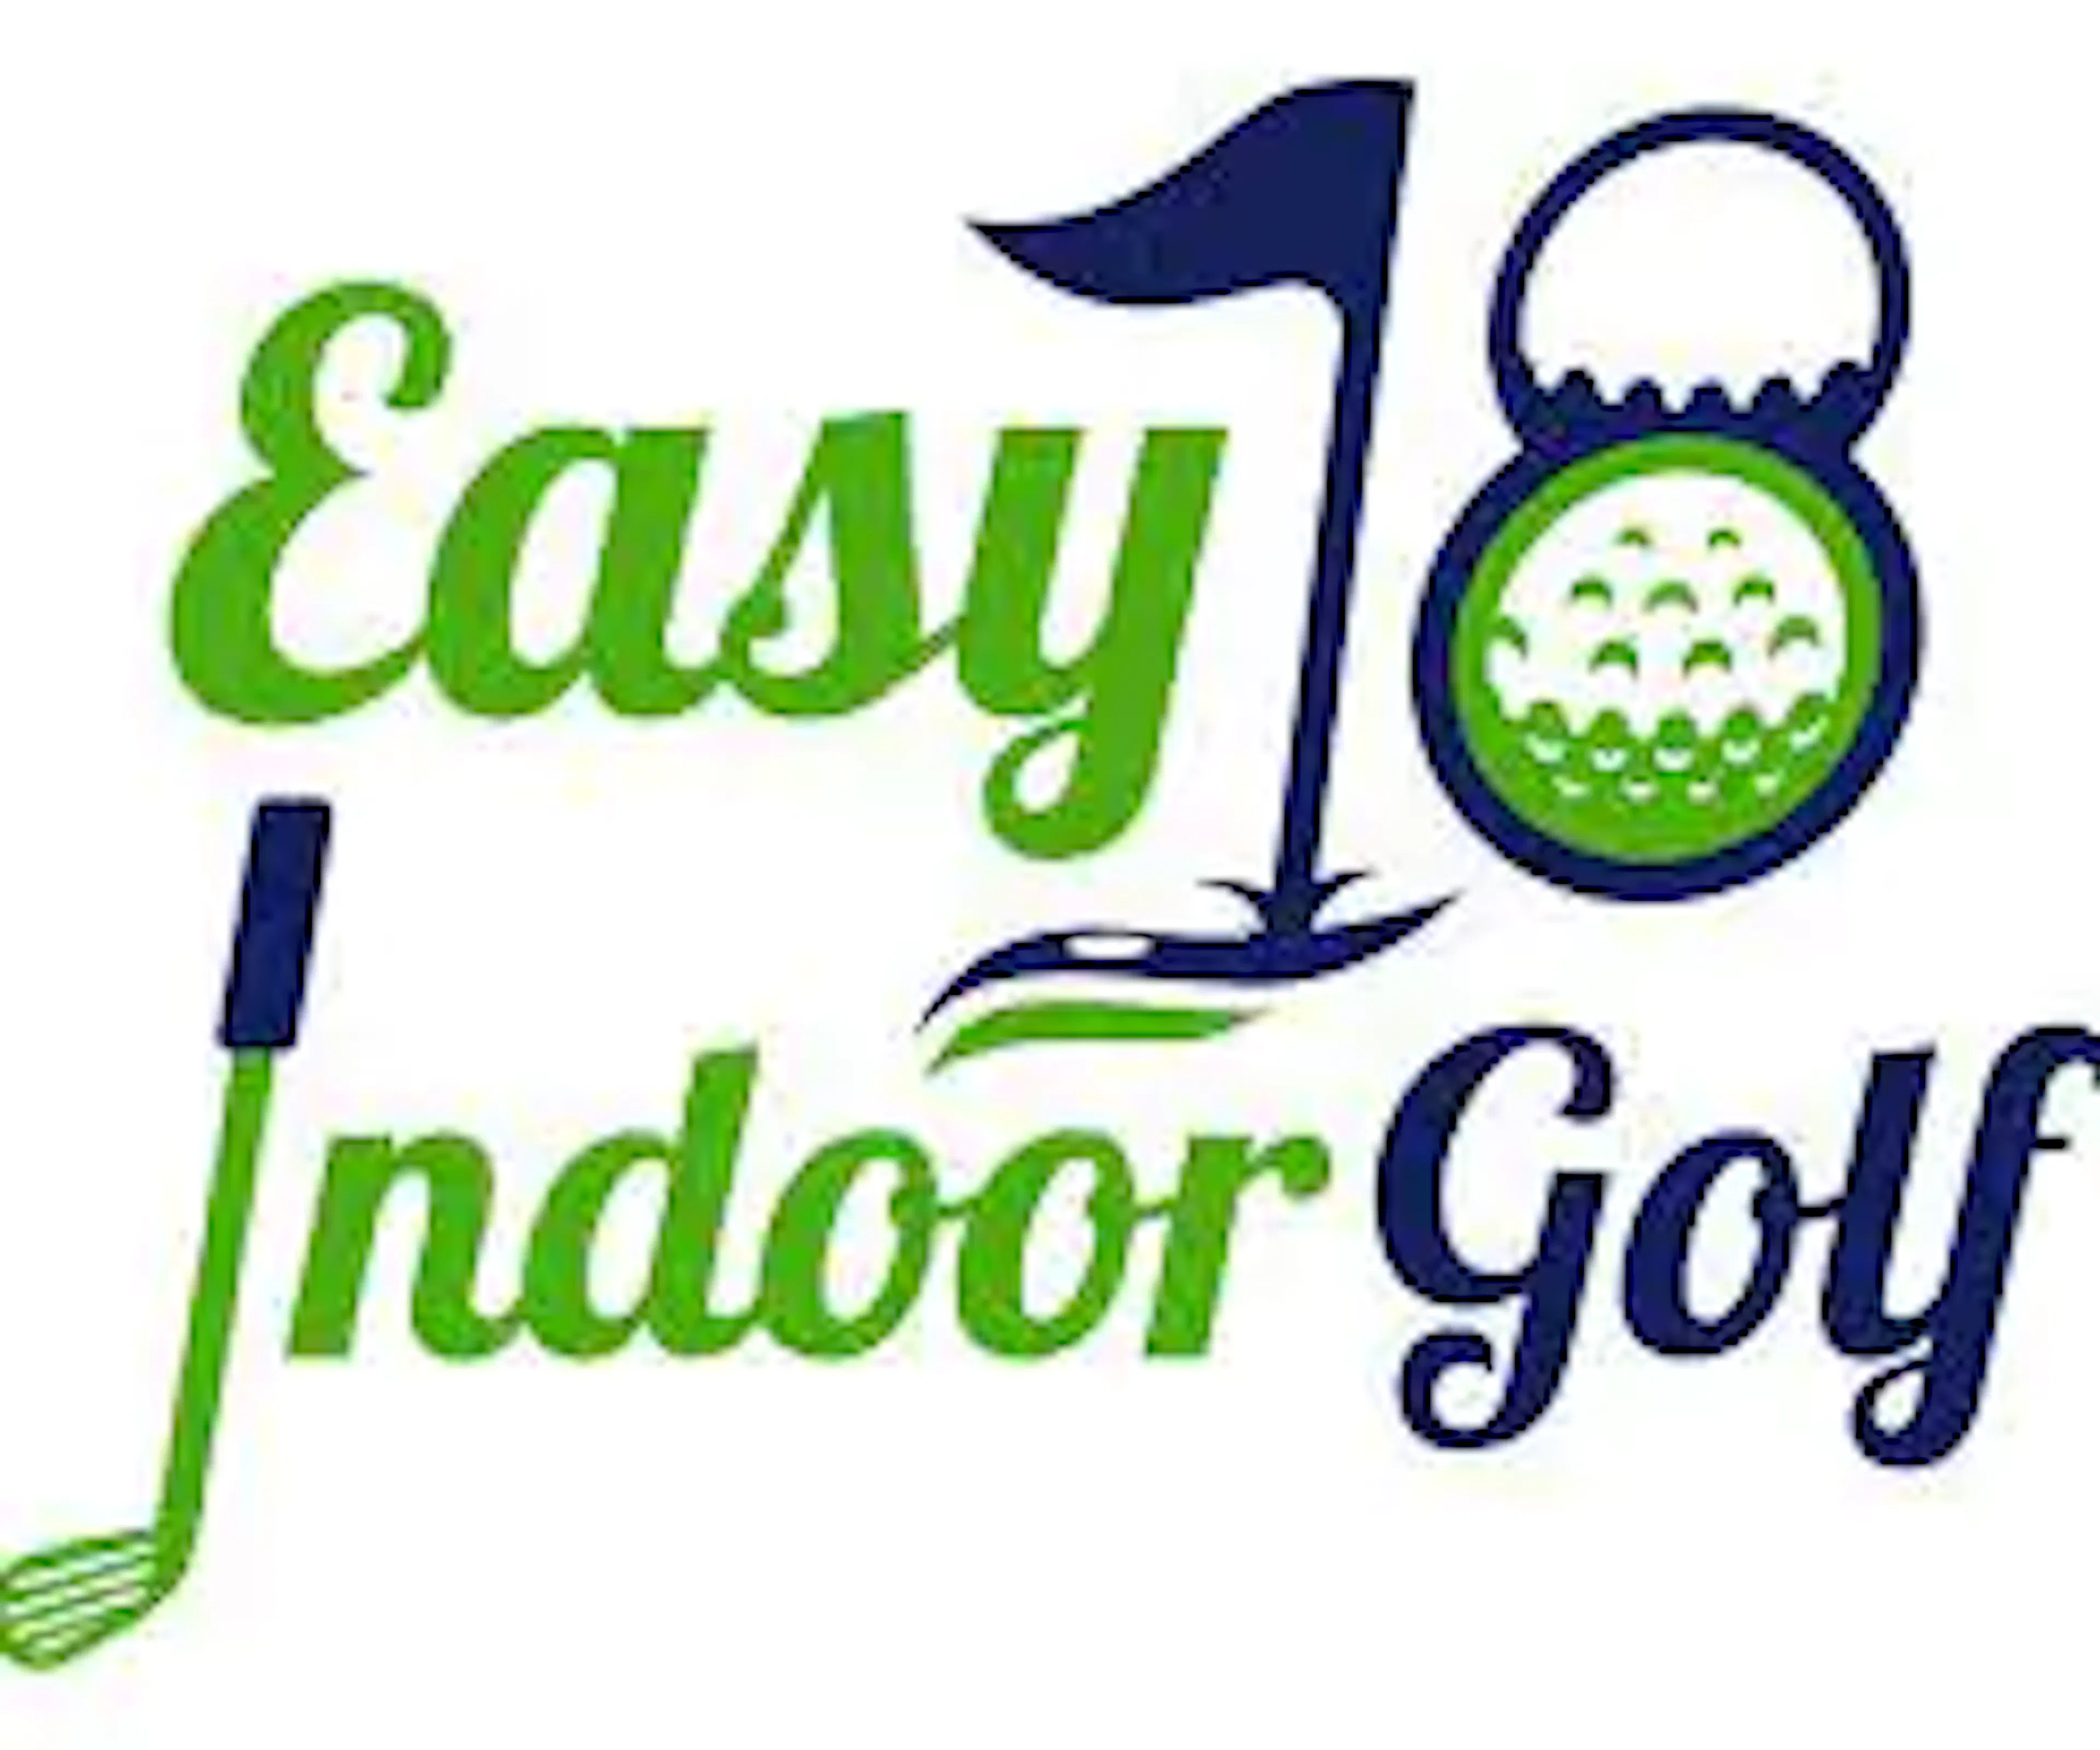 easy 18 indoor golf